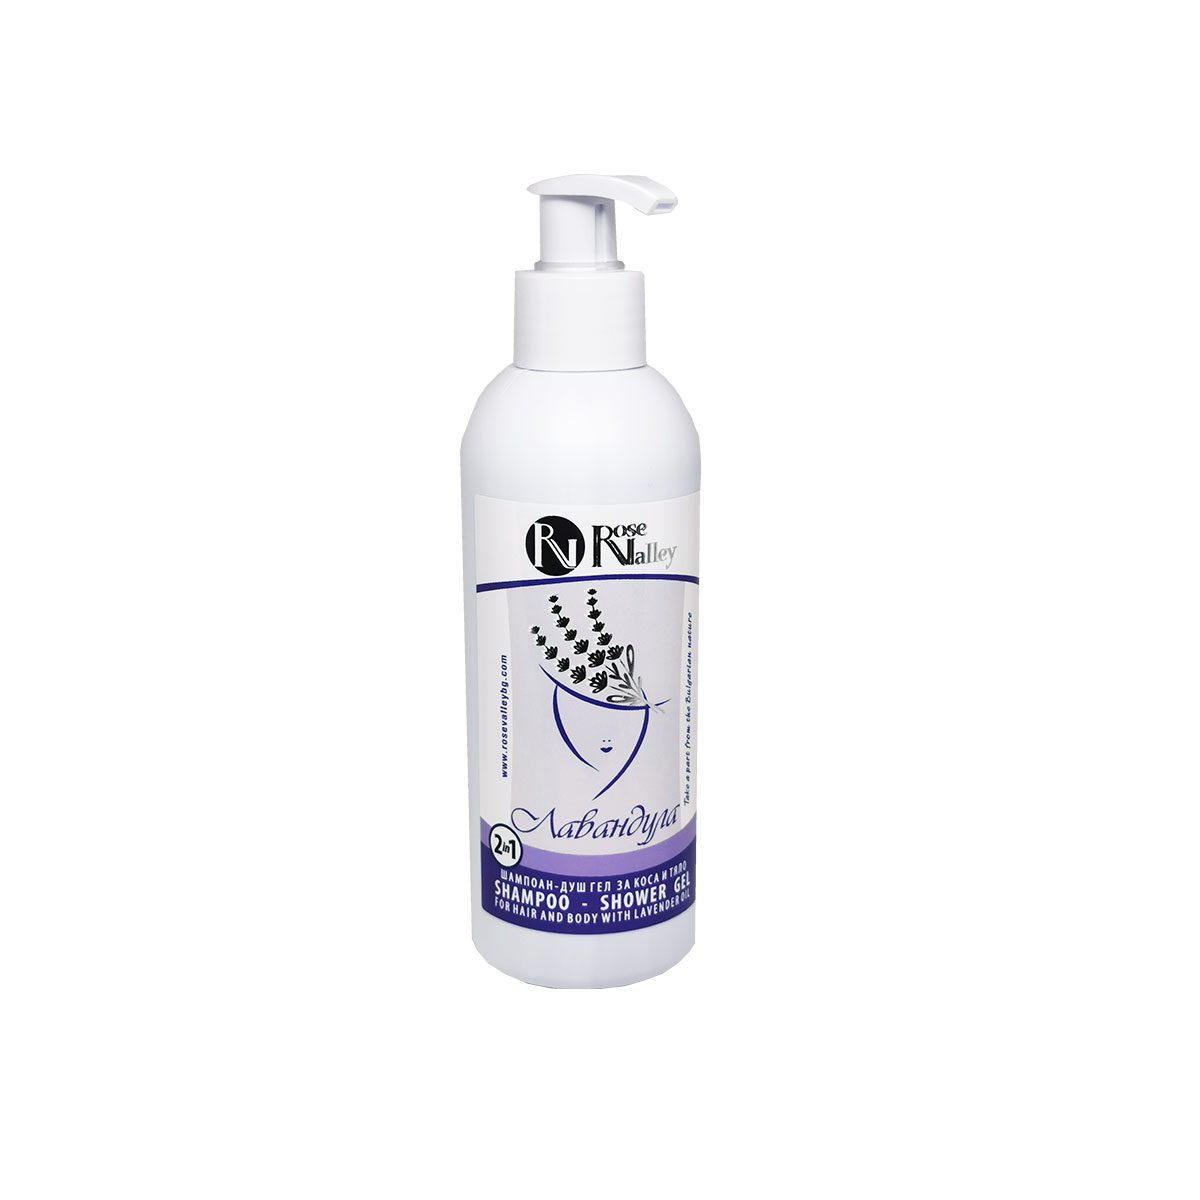 Biologische Lavendel shampoo en douche gel - lavendel uit Bulgarije - kalmeert - vermindert vette huid 250ml